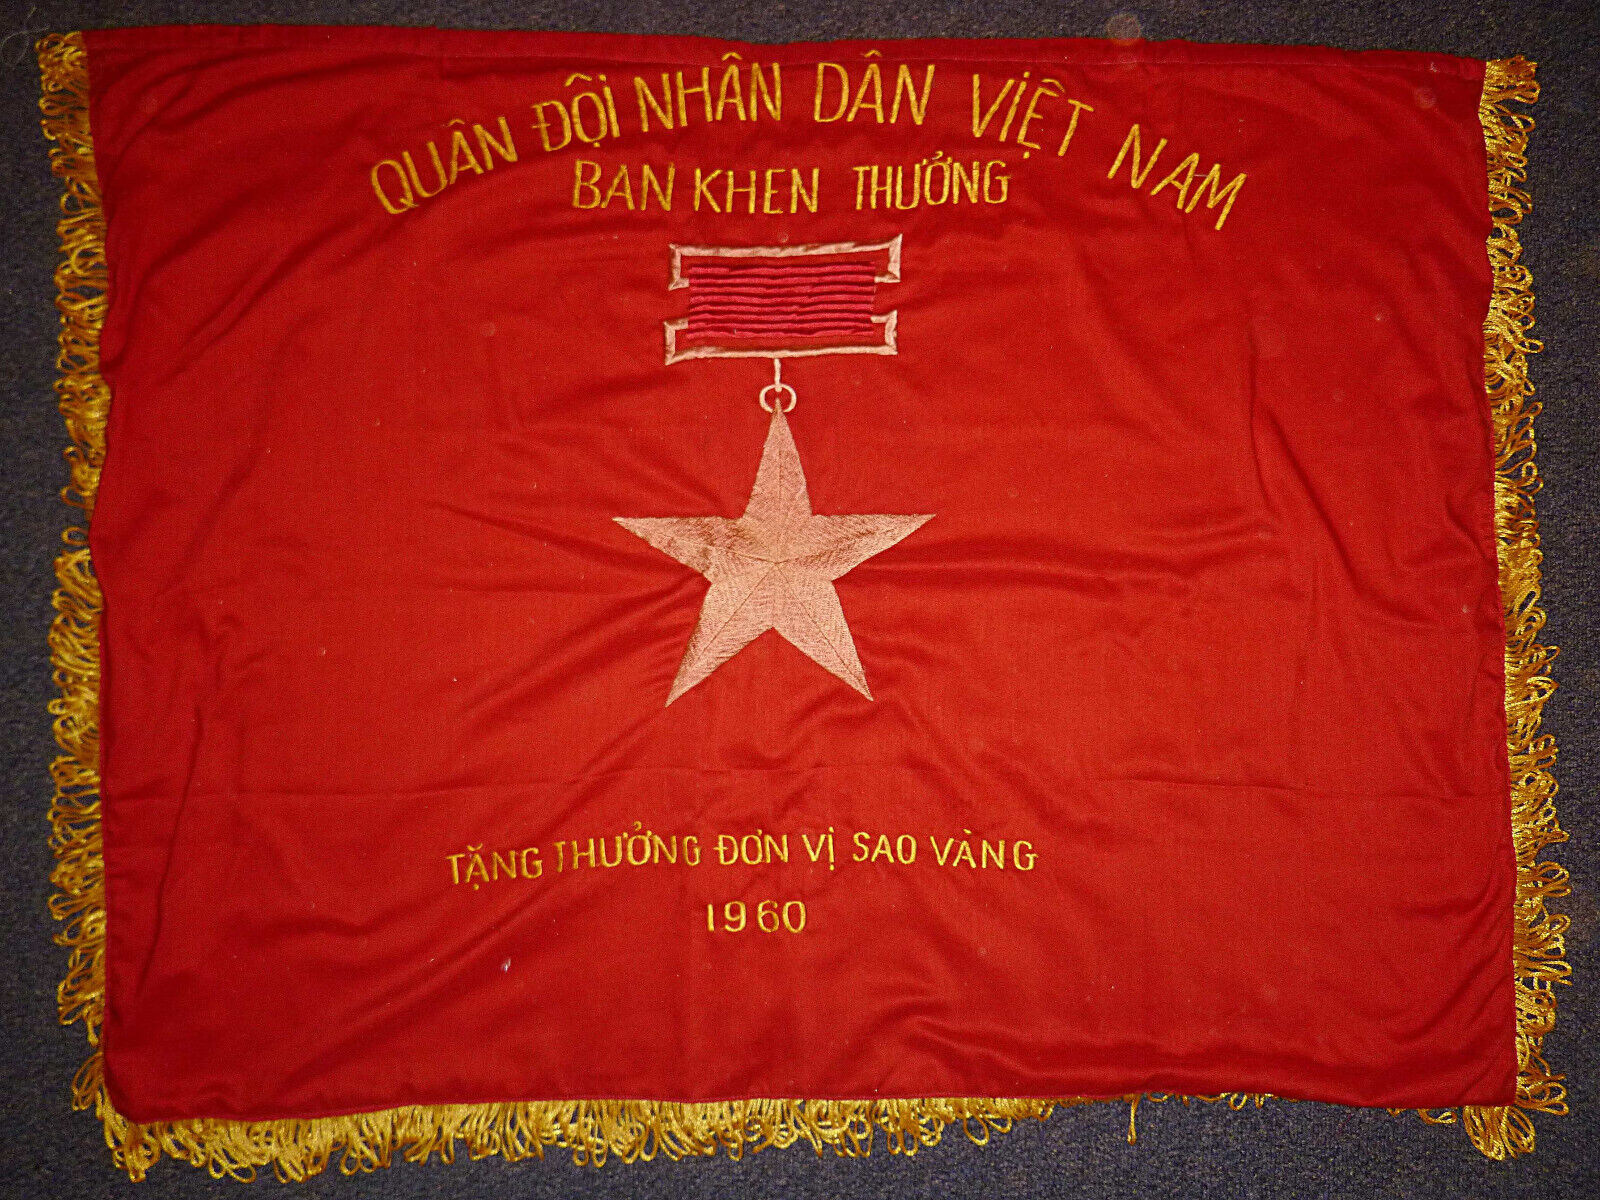 Rare Original 1960 Flag - PAVN - Viet Cong - Vietnam War - Gold Star - F.00